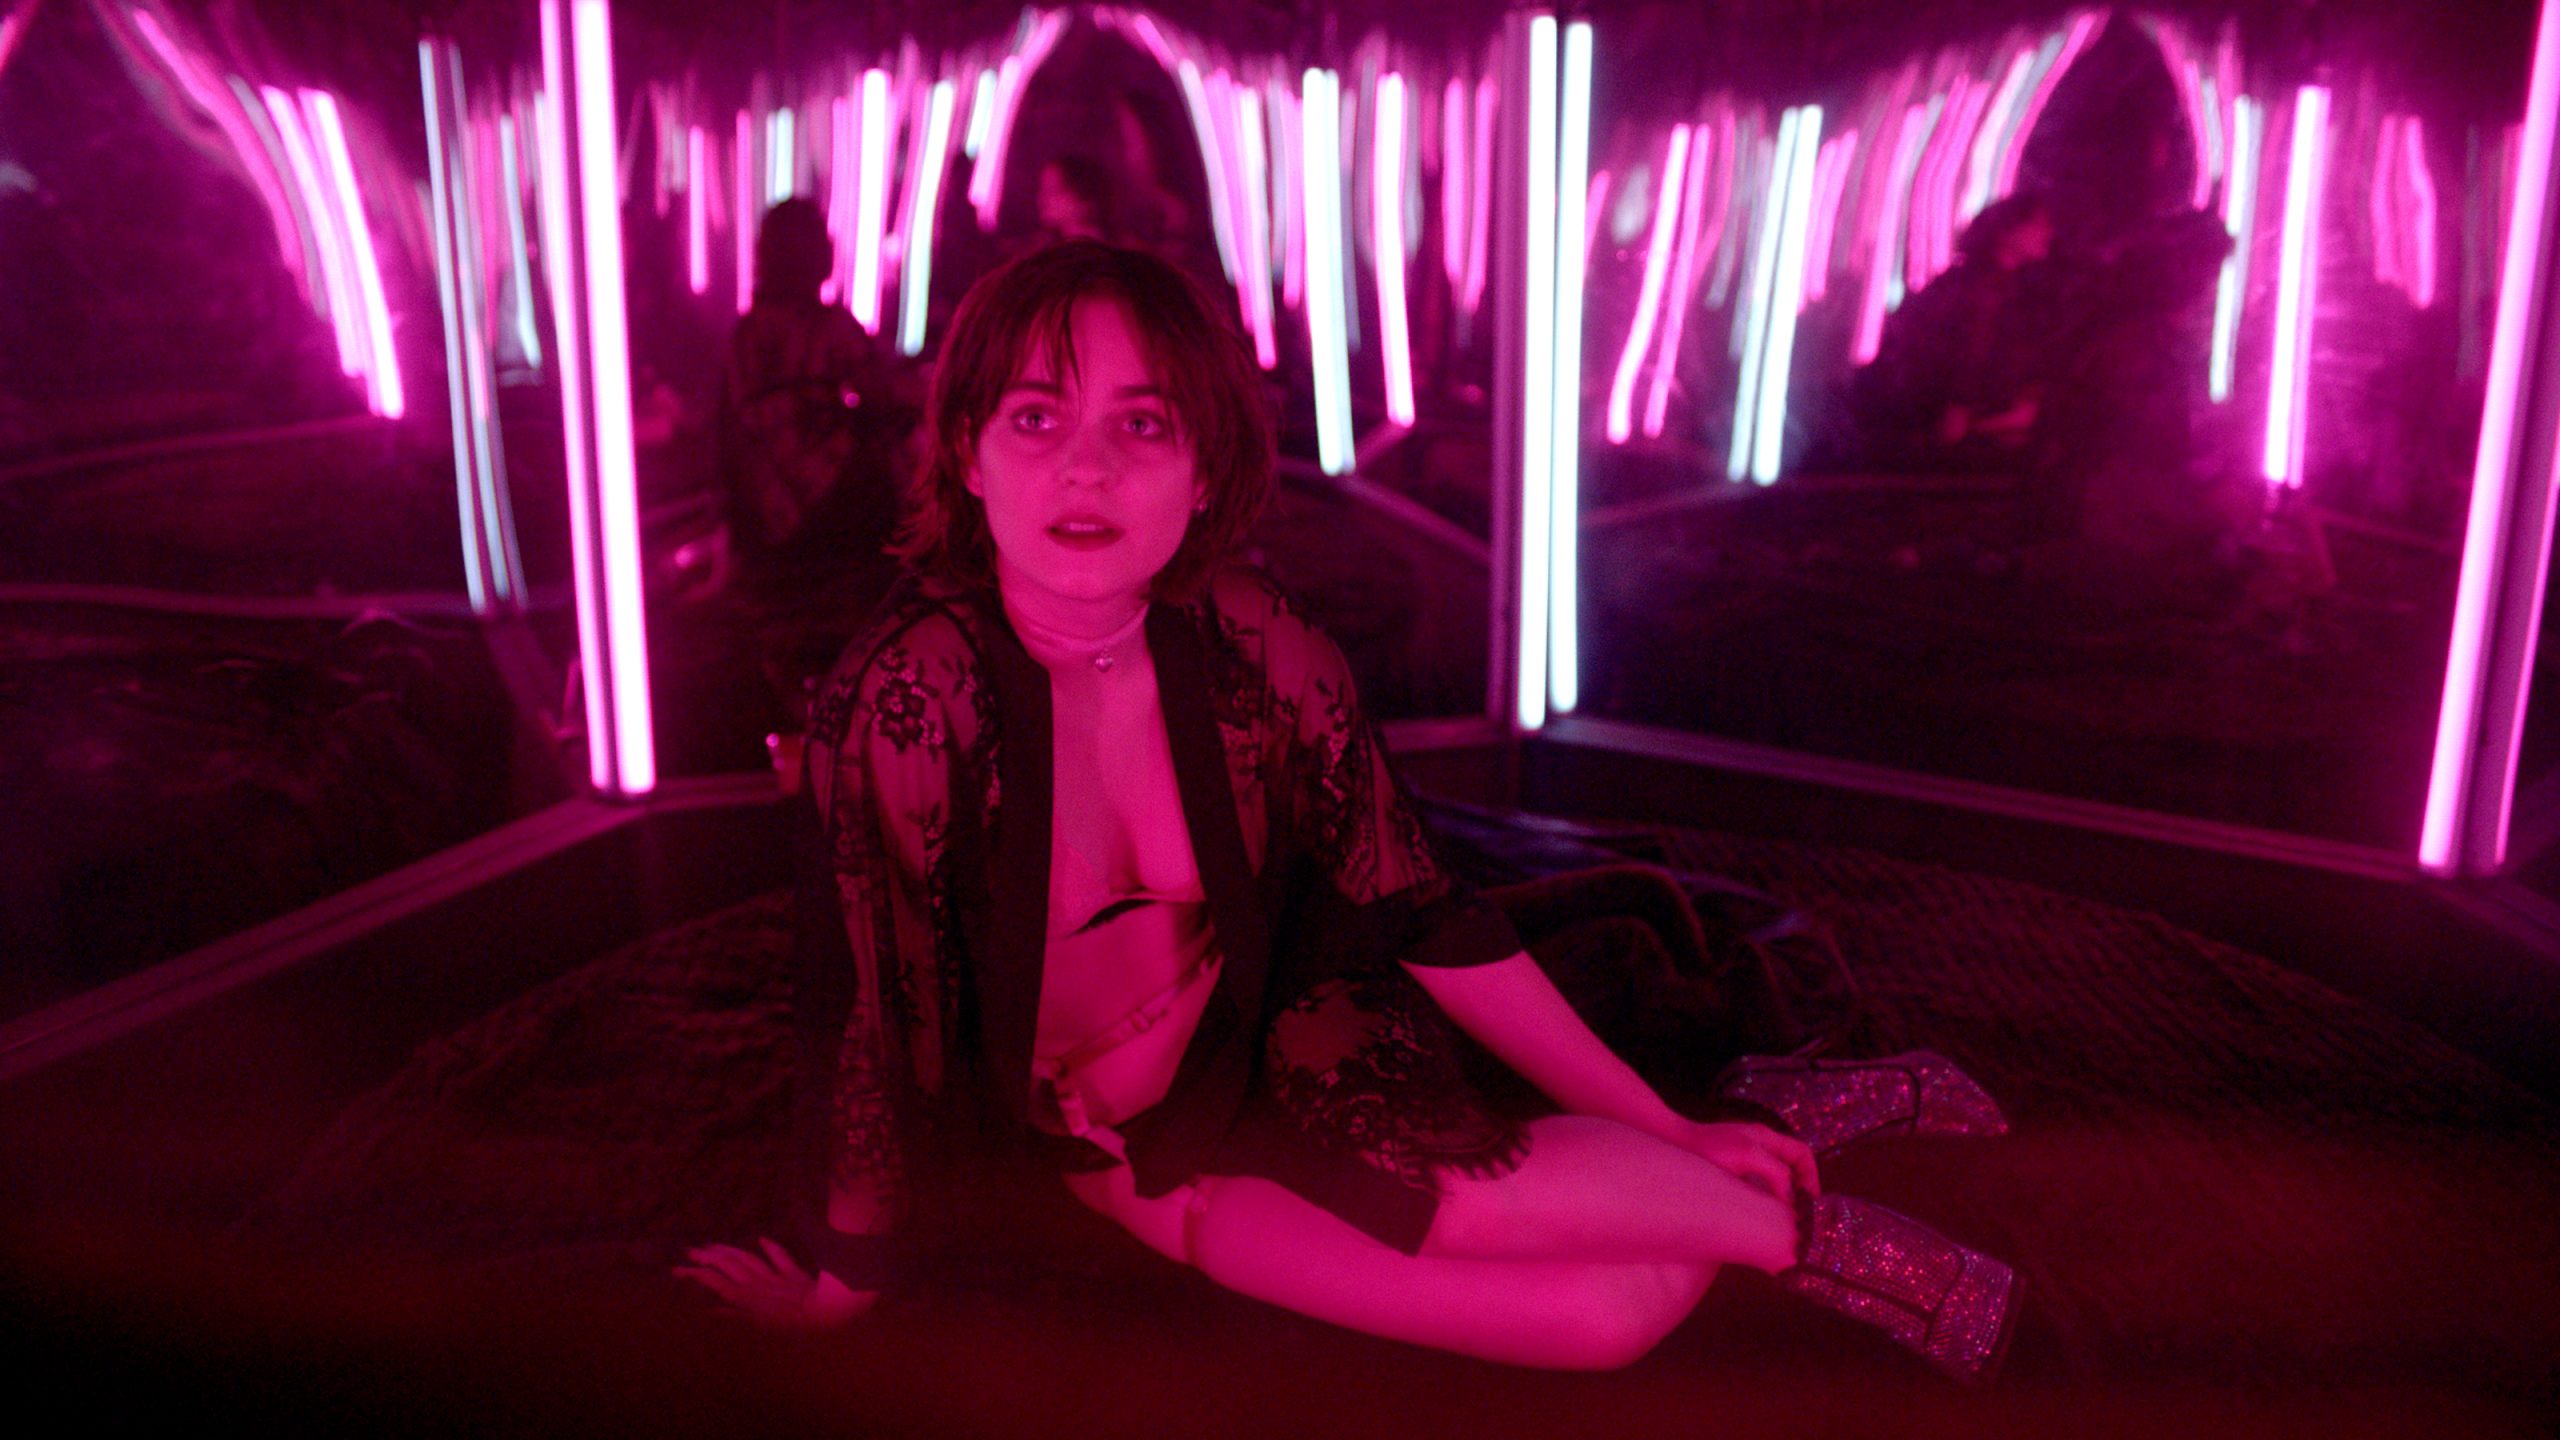 Filmstill aus "O Beautiful Night": Eine leicht bekleidete Frau liegt lassiv auf einem runden Bett in einem rot beleuchteten Spiegelzimmer.